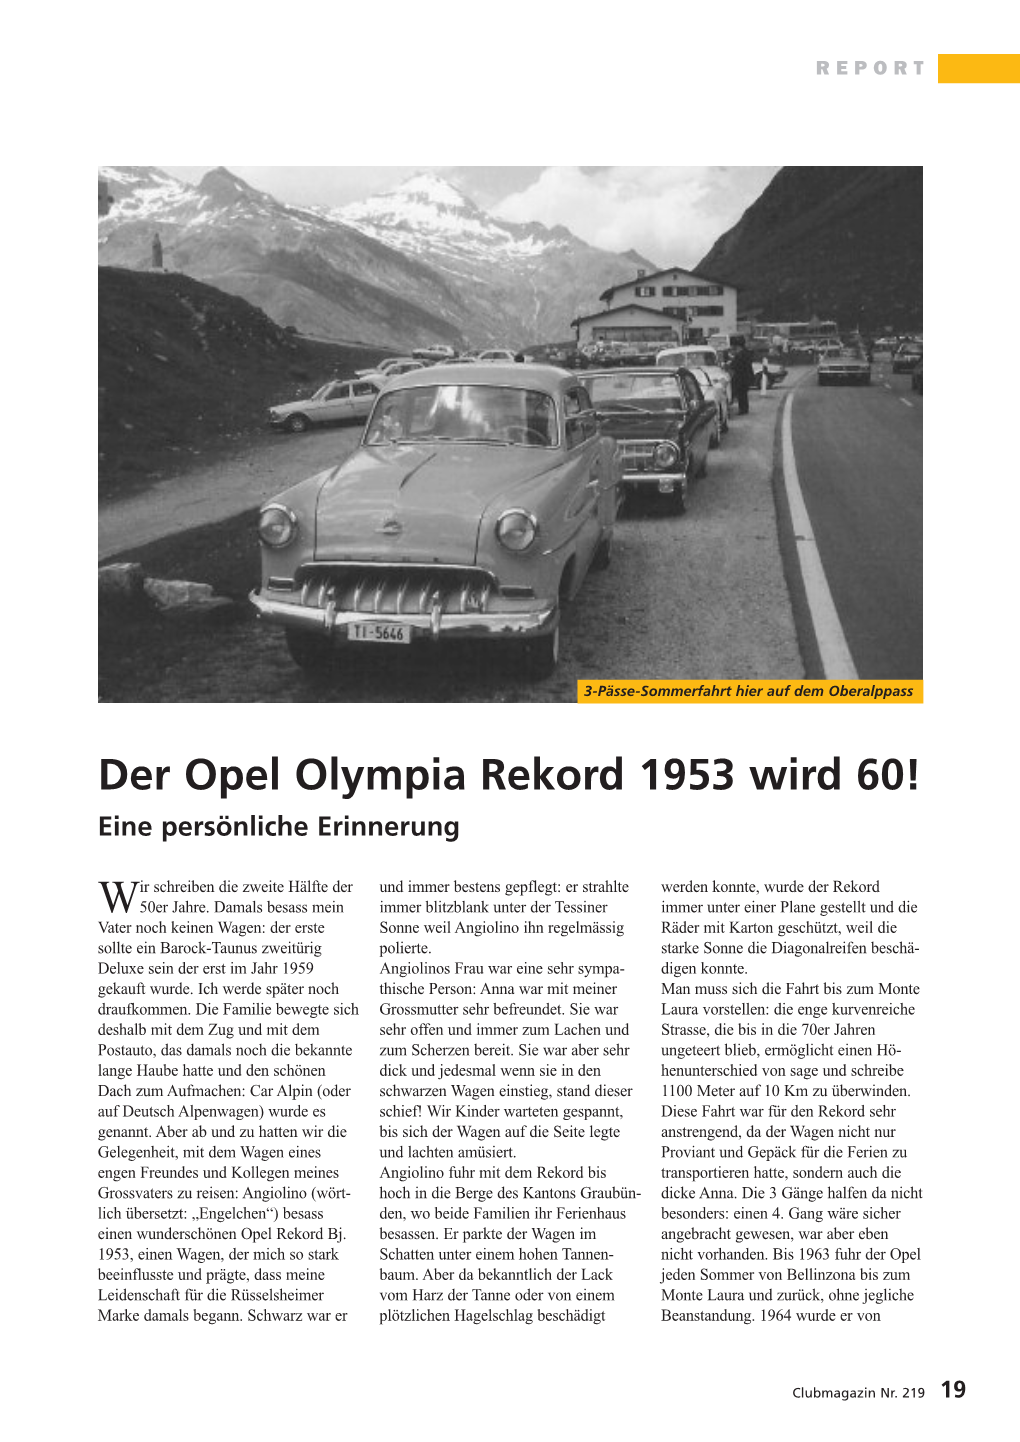 Der Opel Olympia Rekord 1953 Wird 60! Eine Persönliche Erinnerung